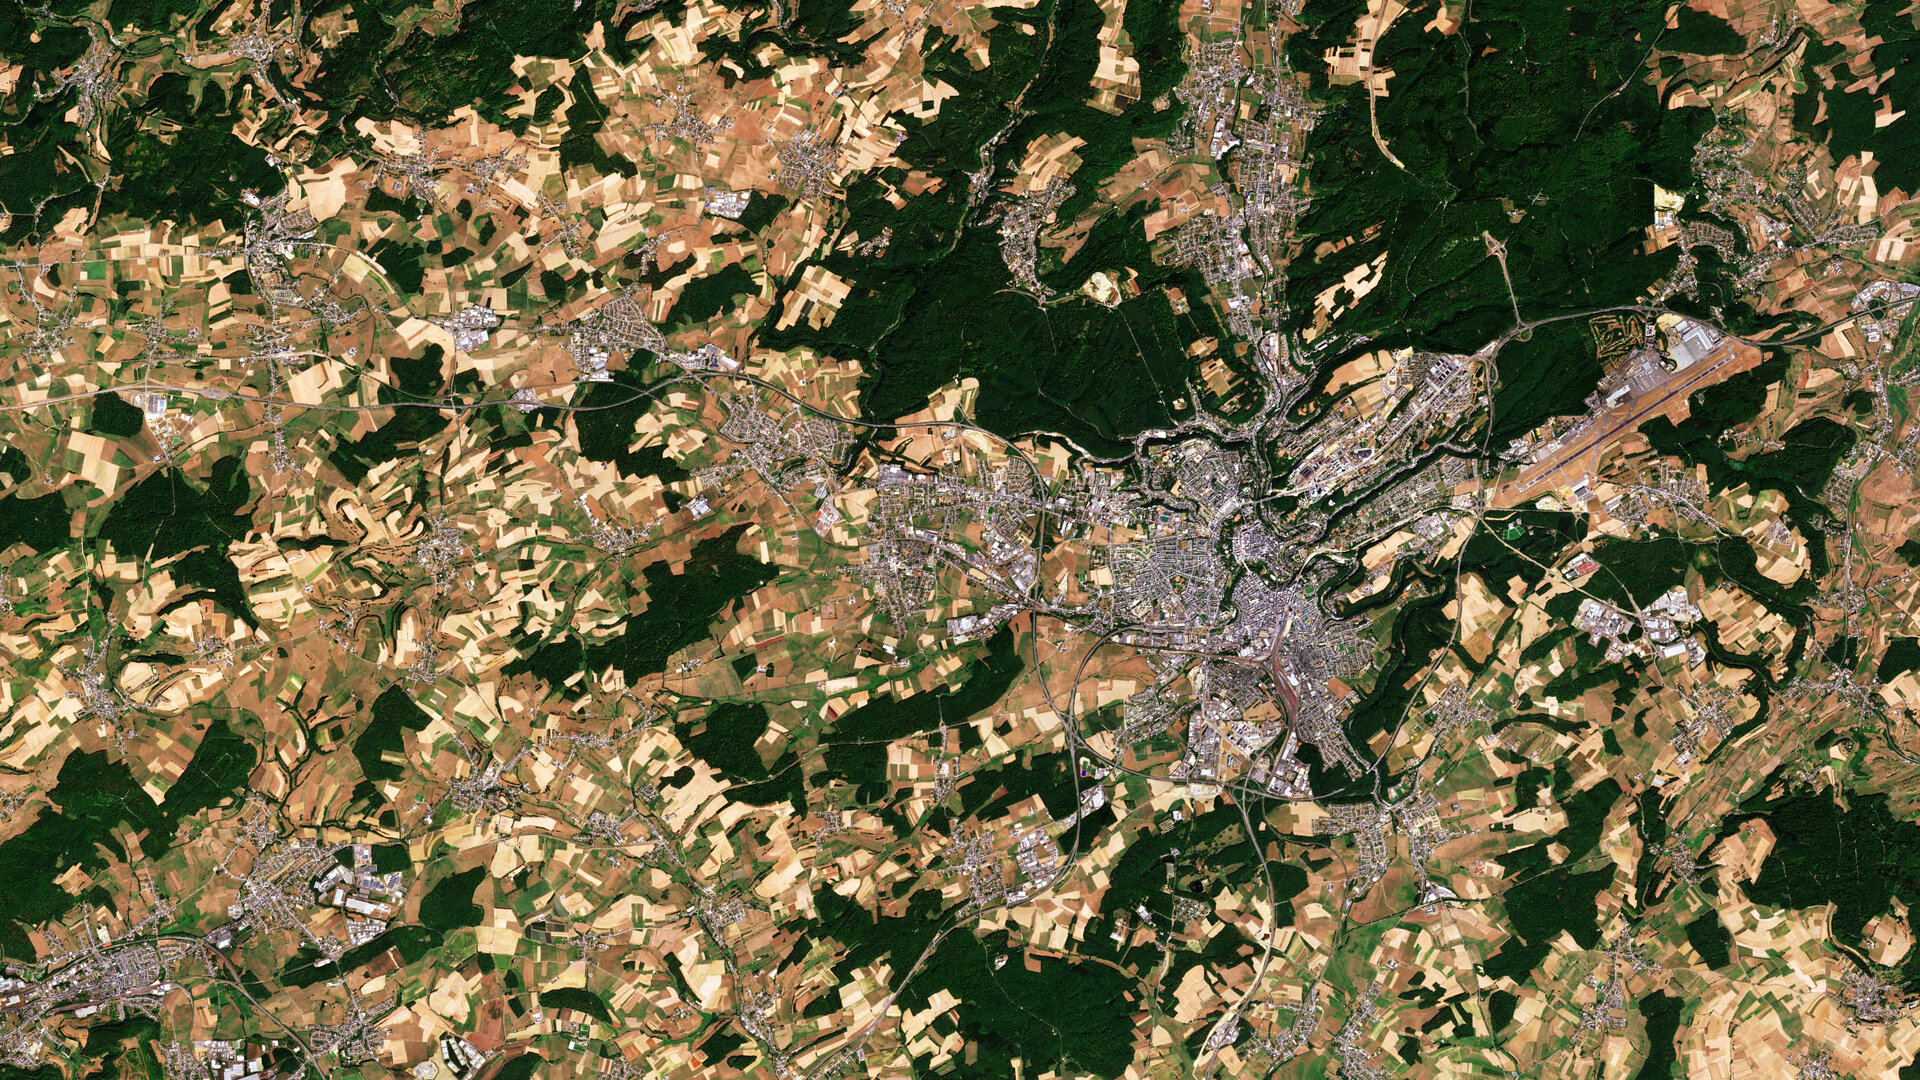 Luxembourg et ses environs, observés par Sentinelle 2A le 6 août 2018